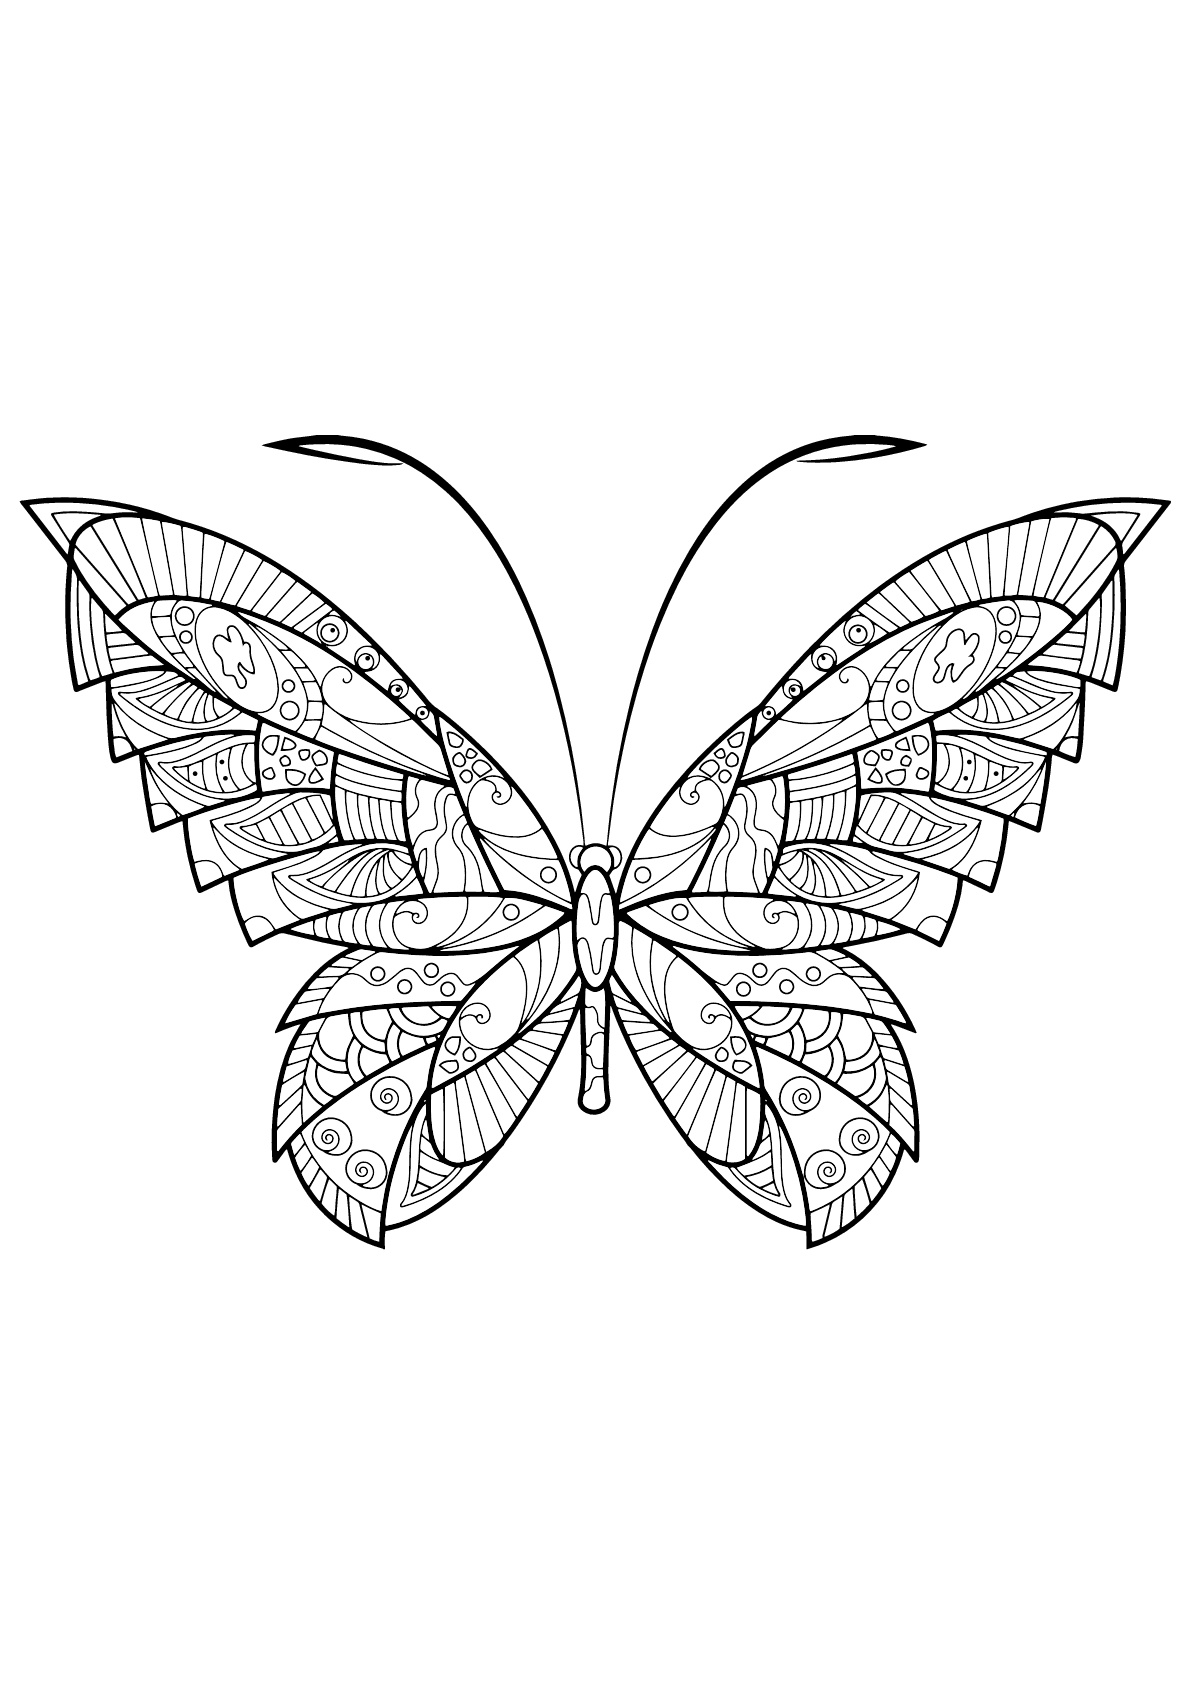 Mariposa con bellos e intrincados dibujos - 17